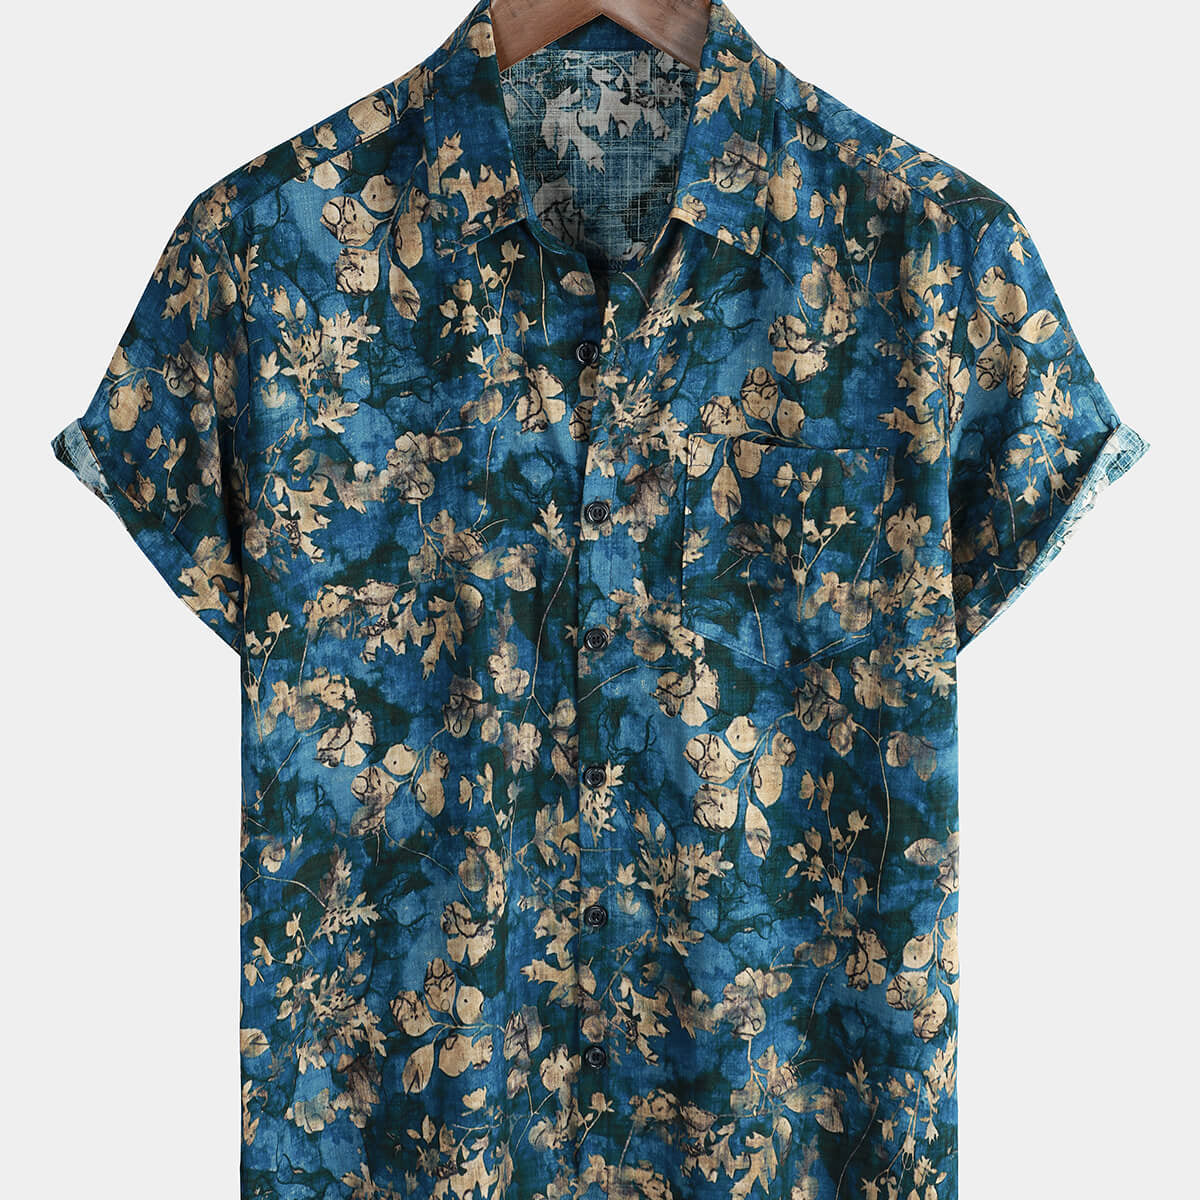 Men's Blue Cotton Summer Hawaiian Floral Button Up Short Sleeve Shirt